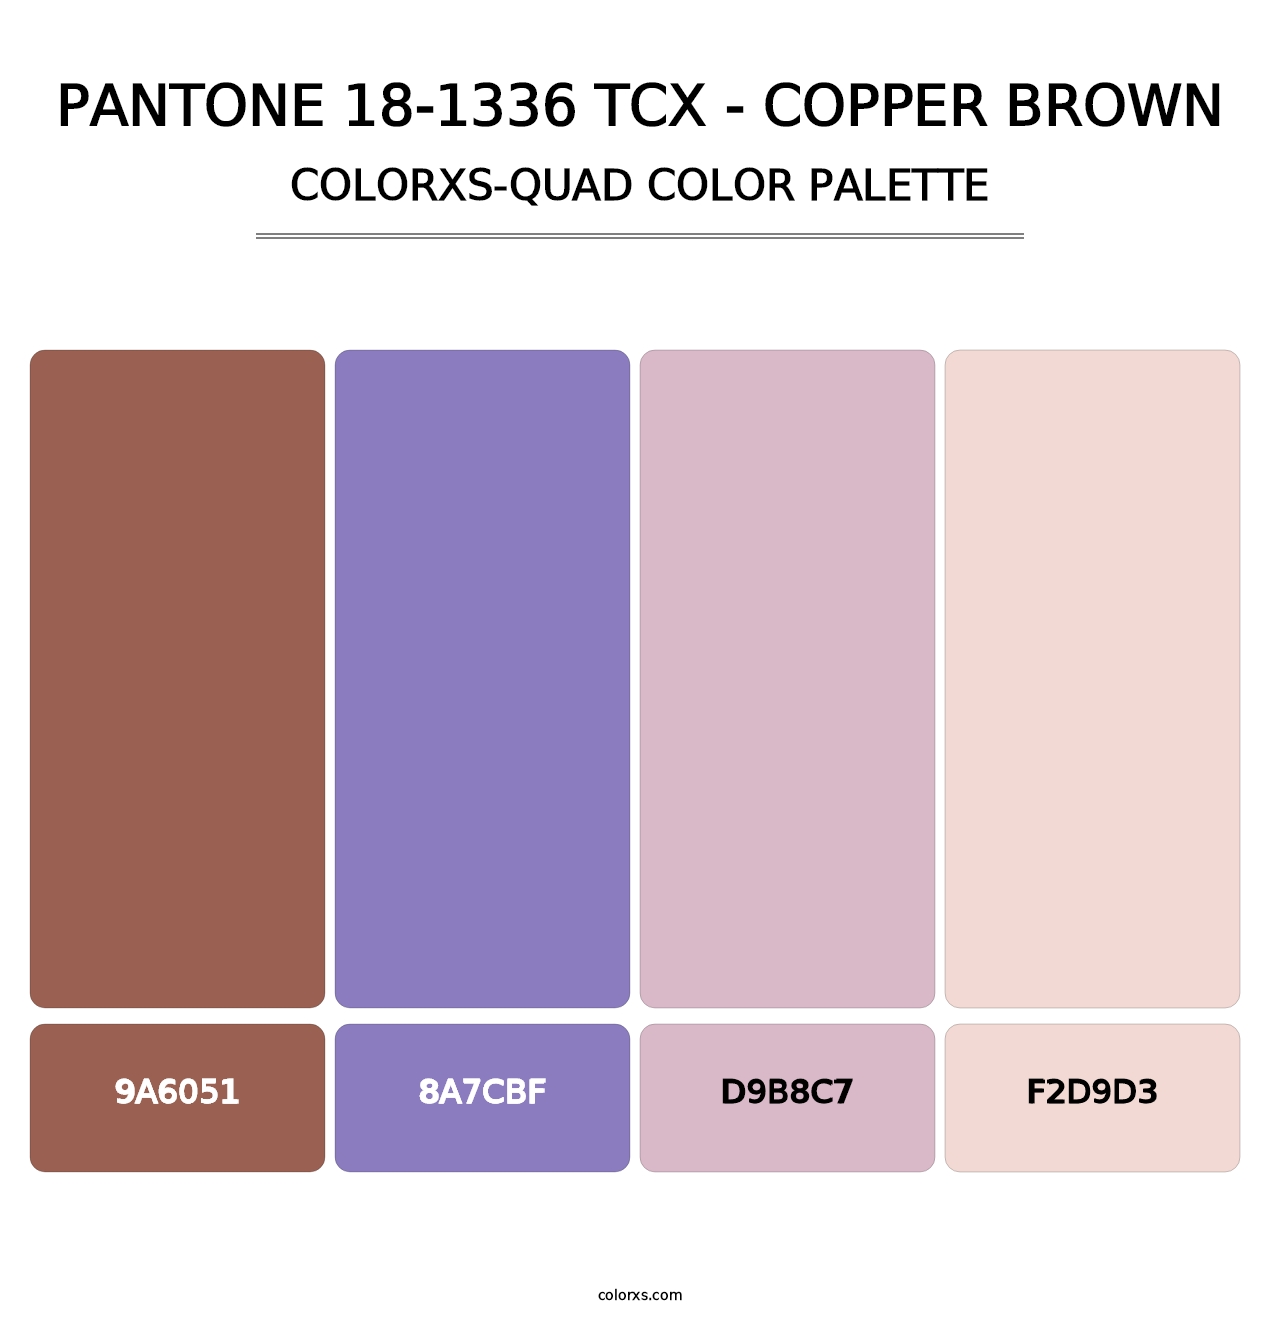 PANTONE 18-1336 TCX - Copper Brown - Colorxs Quad Palette